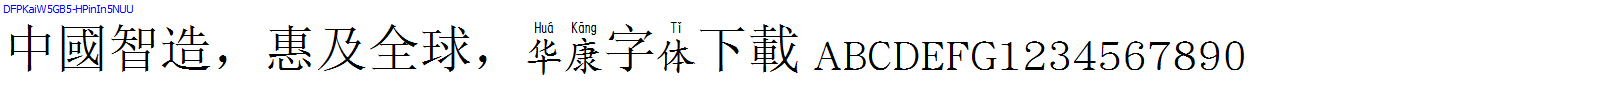 華康字體DFPKaiW5GB5-HPinIn5NUU.TTF